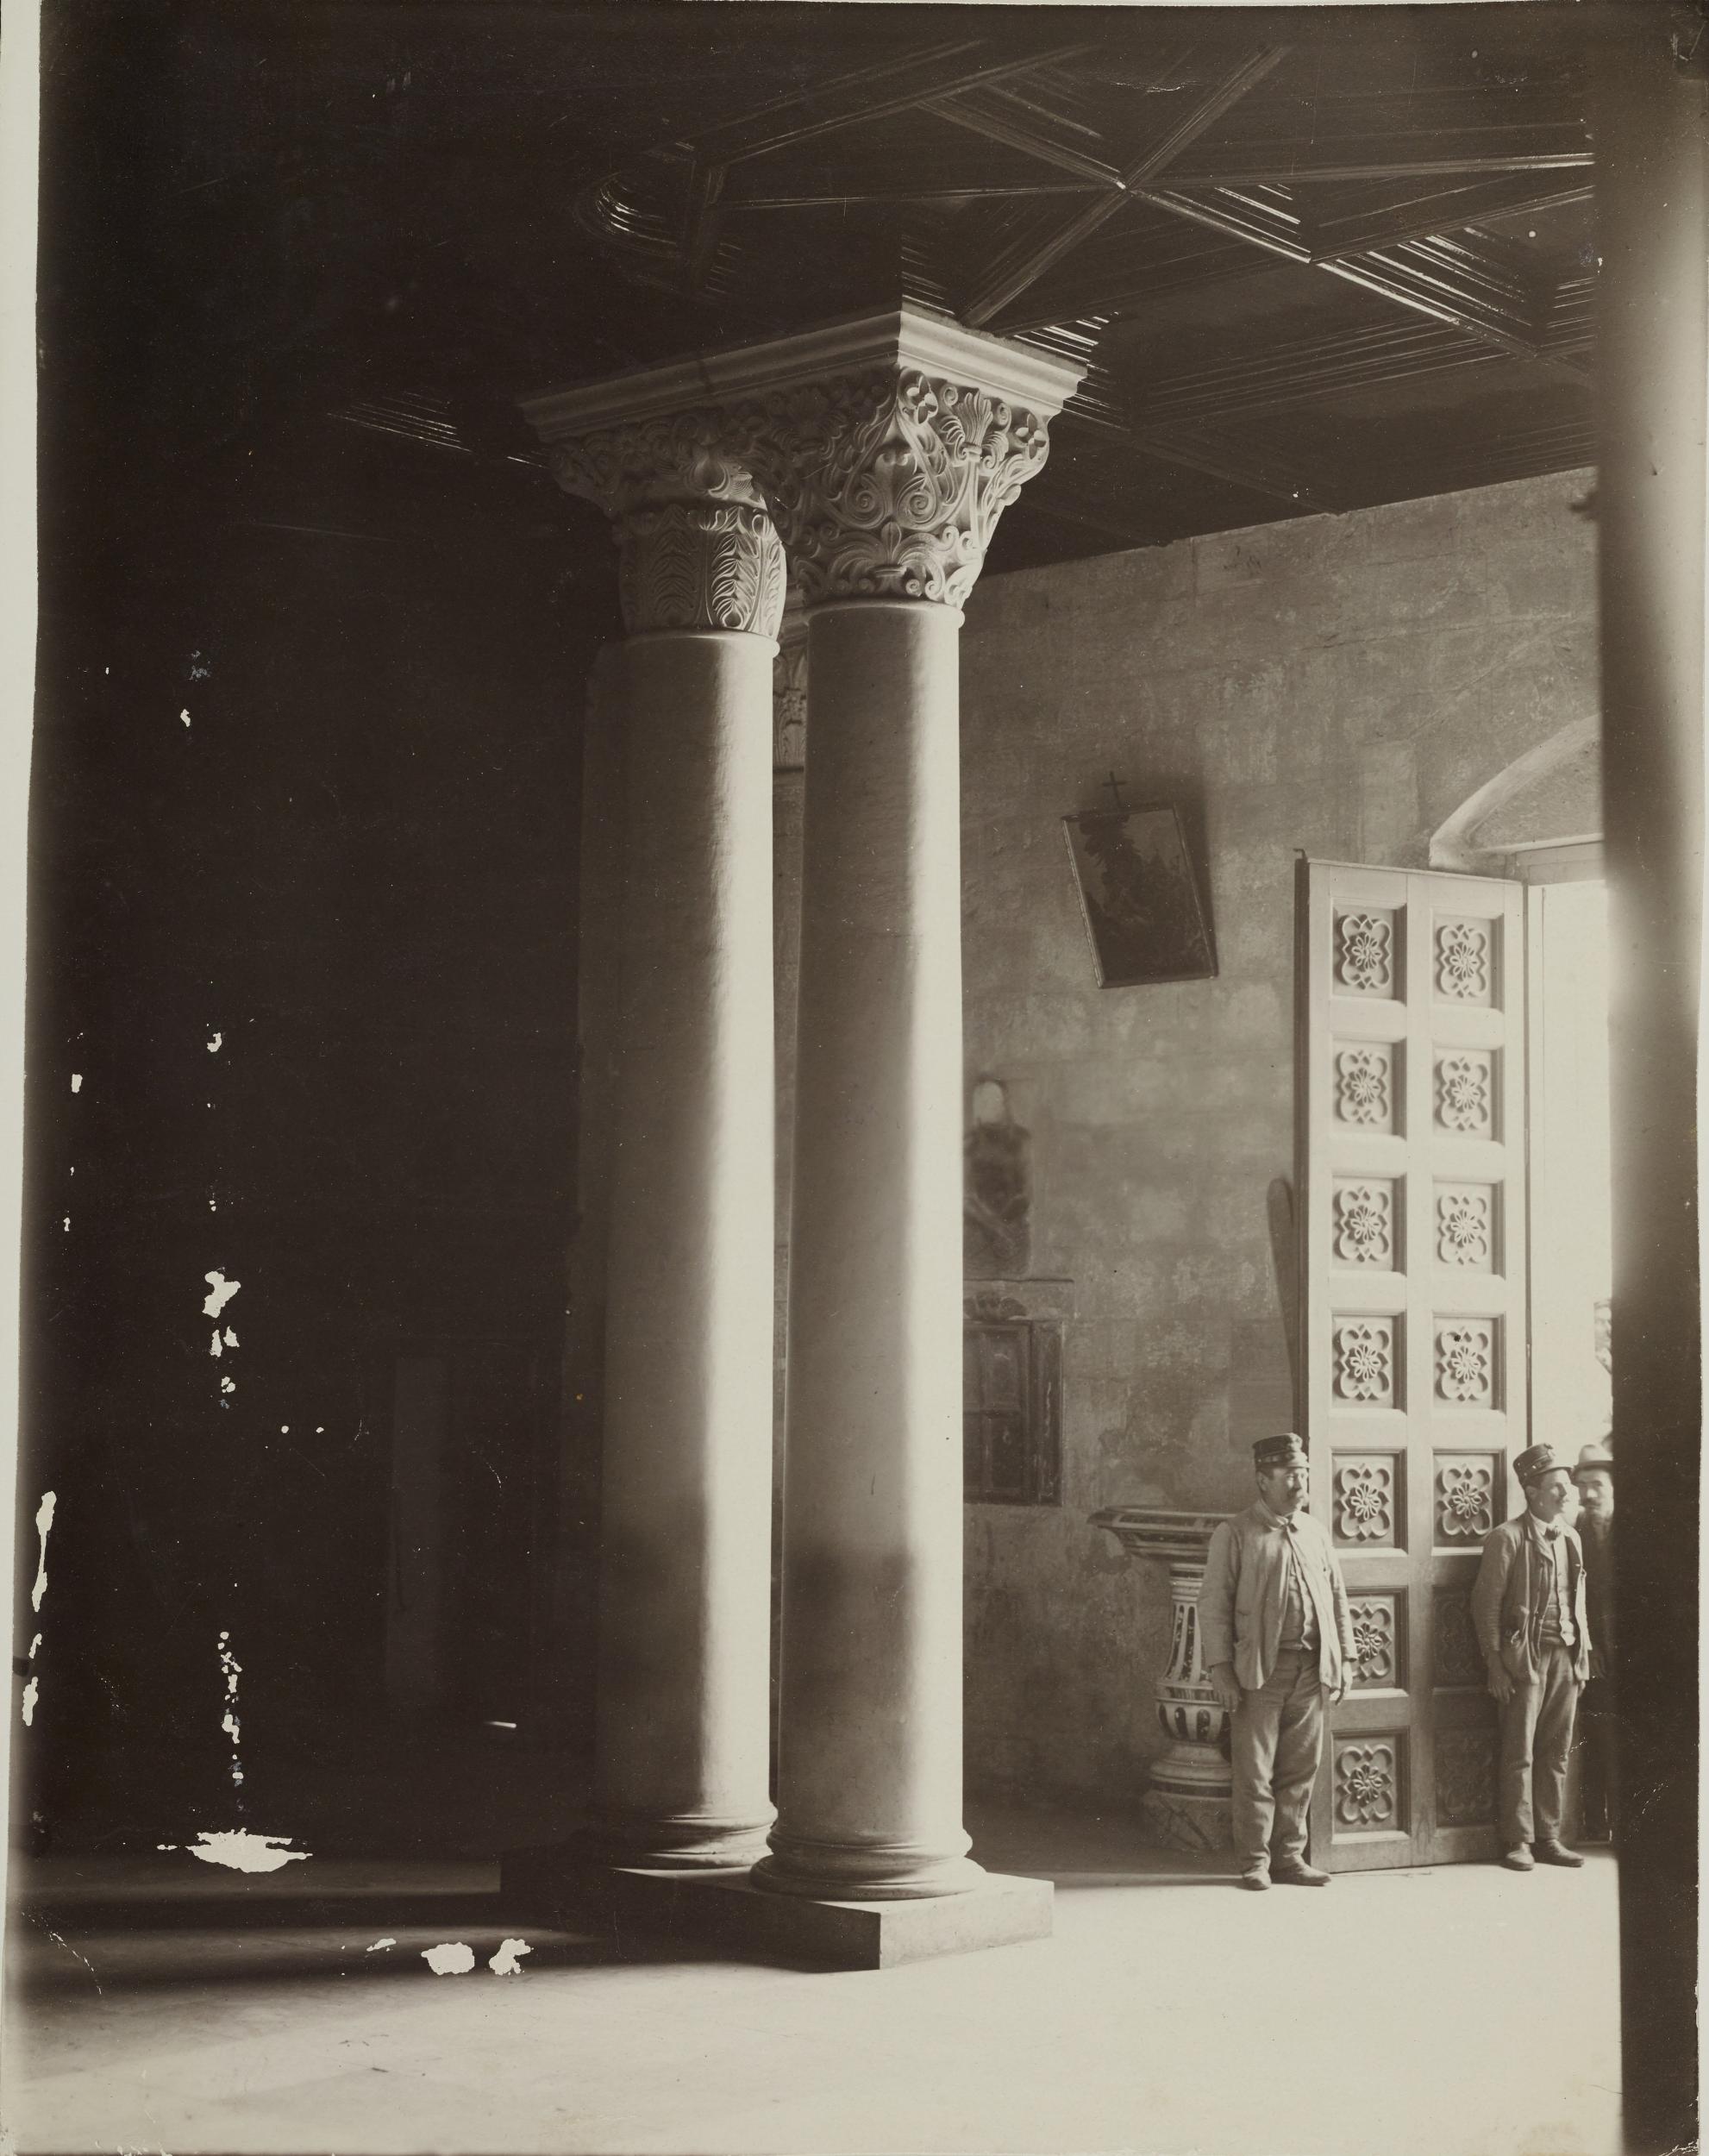 Fotografo non identificato, Acquaviva delle Fonti - Cattedrale, capitelli su colonne linate, 1901-1925, gelatina ai sali d'argento/carta, MPI130129